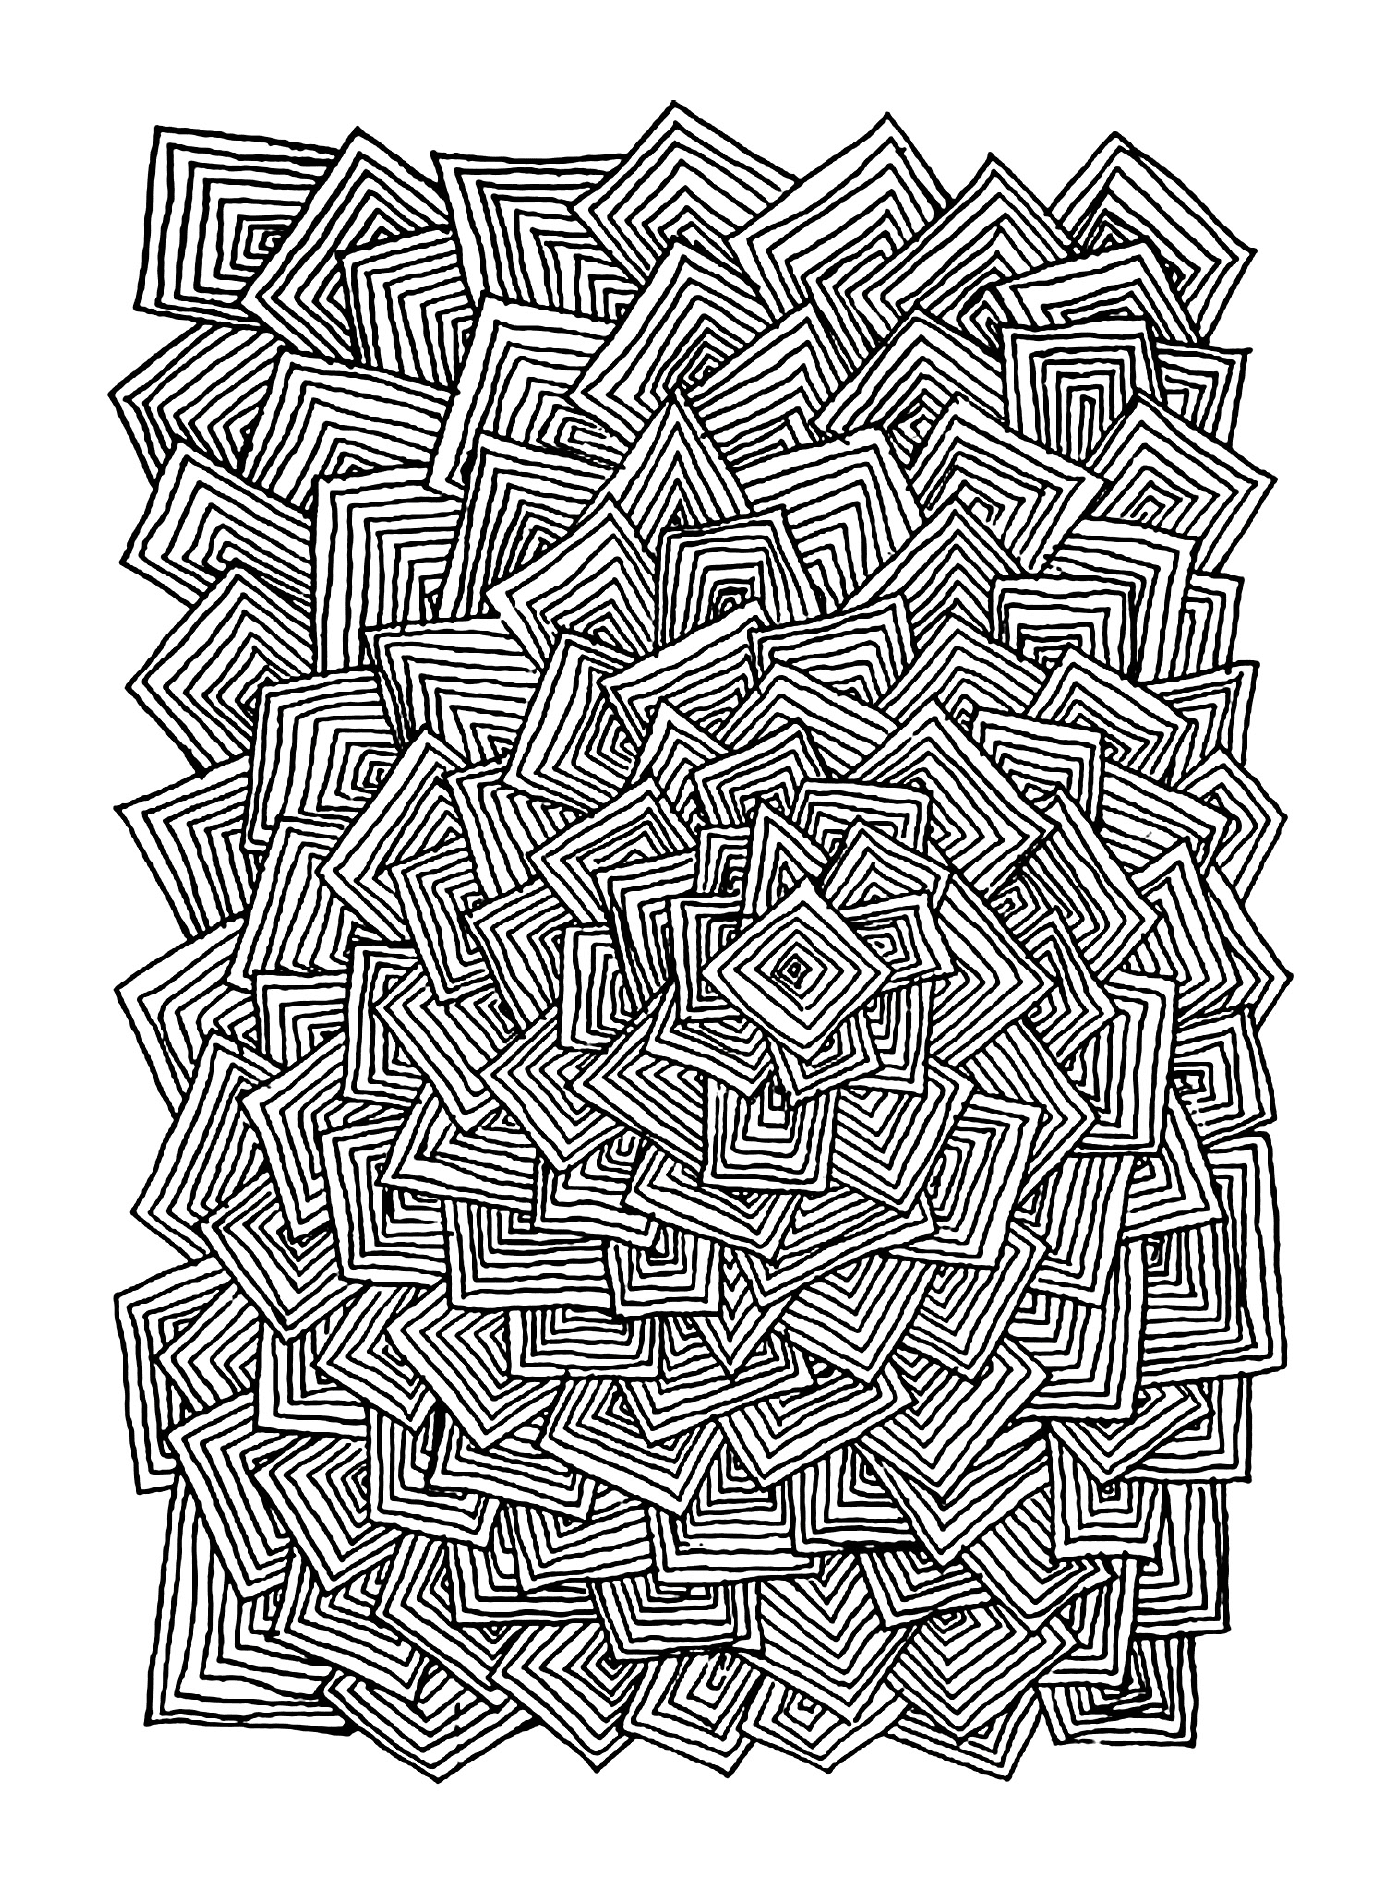  абстрактный рисунок из квадратов 